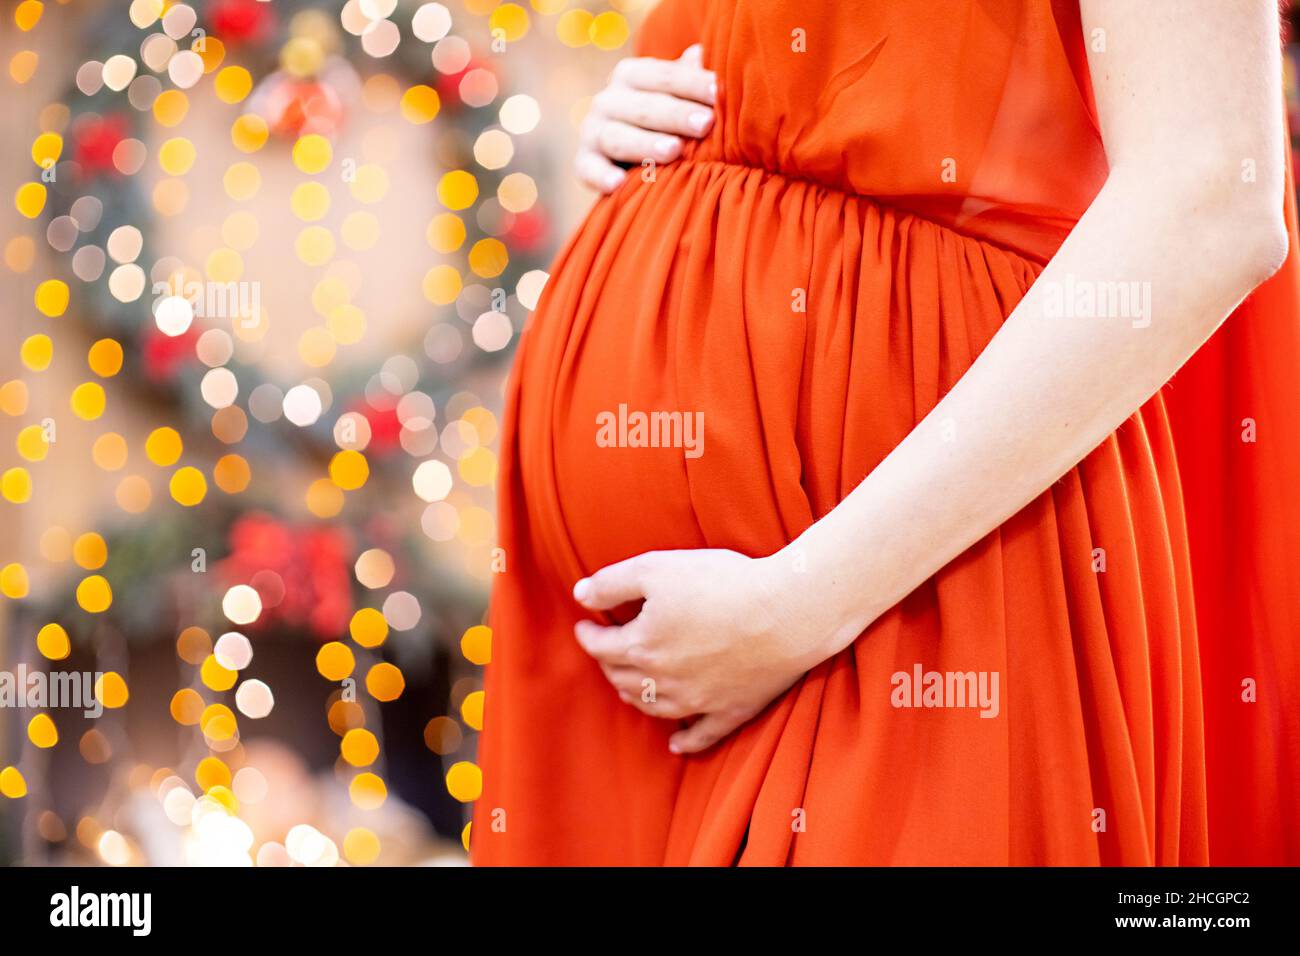 Bestes weihnachtsgeschenk. Schwangere in einem roten Kleid umarmt ihren Bauch vor dem Hintergrund des Weihnachtswohnzimmers in Unschärfe. Nahaufnahme kein Gesicht. Stockfoto